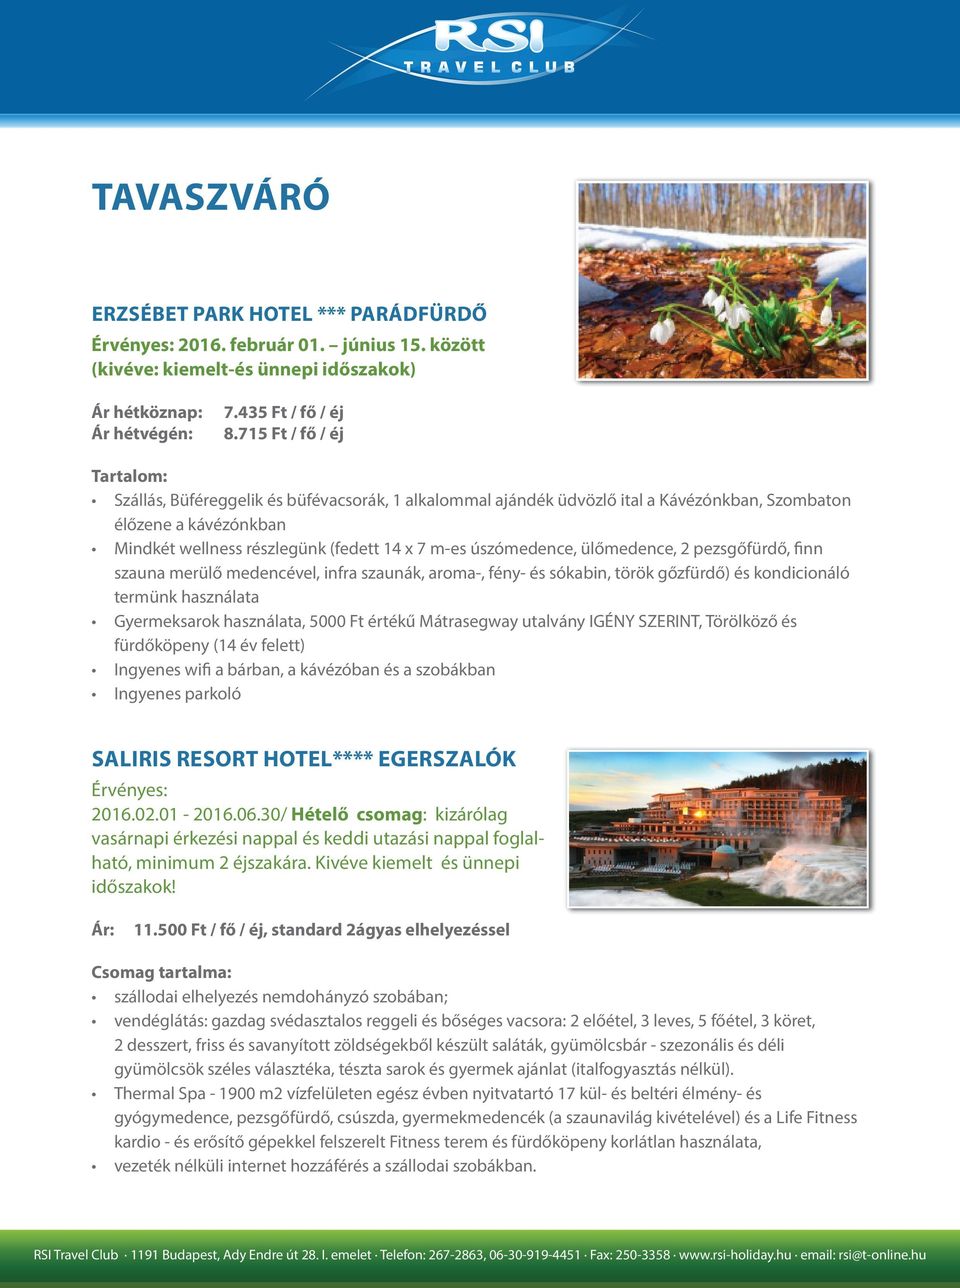 TAVASZVÁRÓ SALIRIS RESORT HOTEL**** EGERSZALÓK ERZSÉBET PARK HOTEL ***  PARÁDFÜRDŐ - PDF Free Download